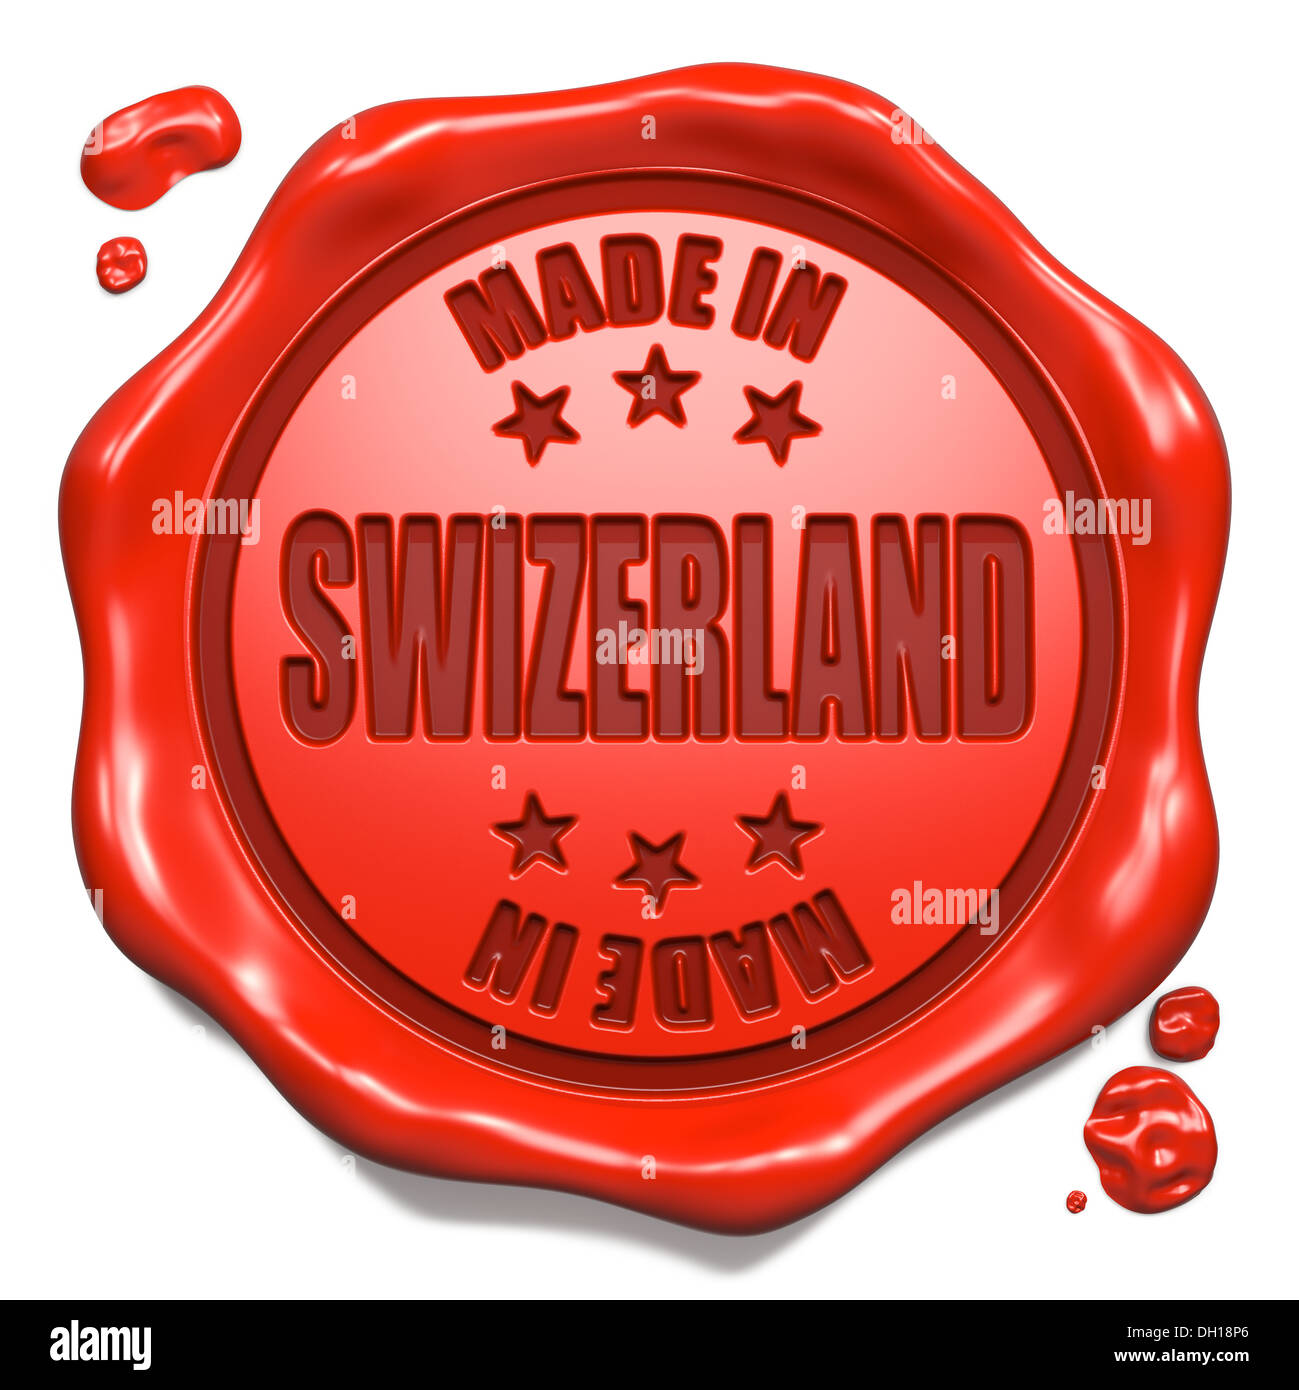 Made in Swizerland - Timbro sul sigillo di cera rossa. Foto Stock